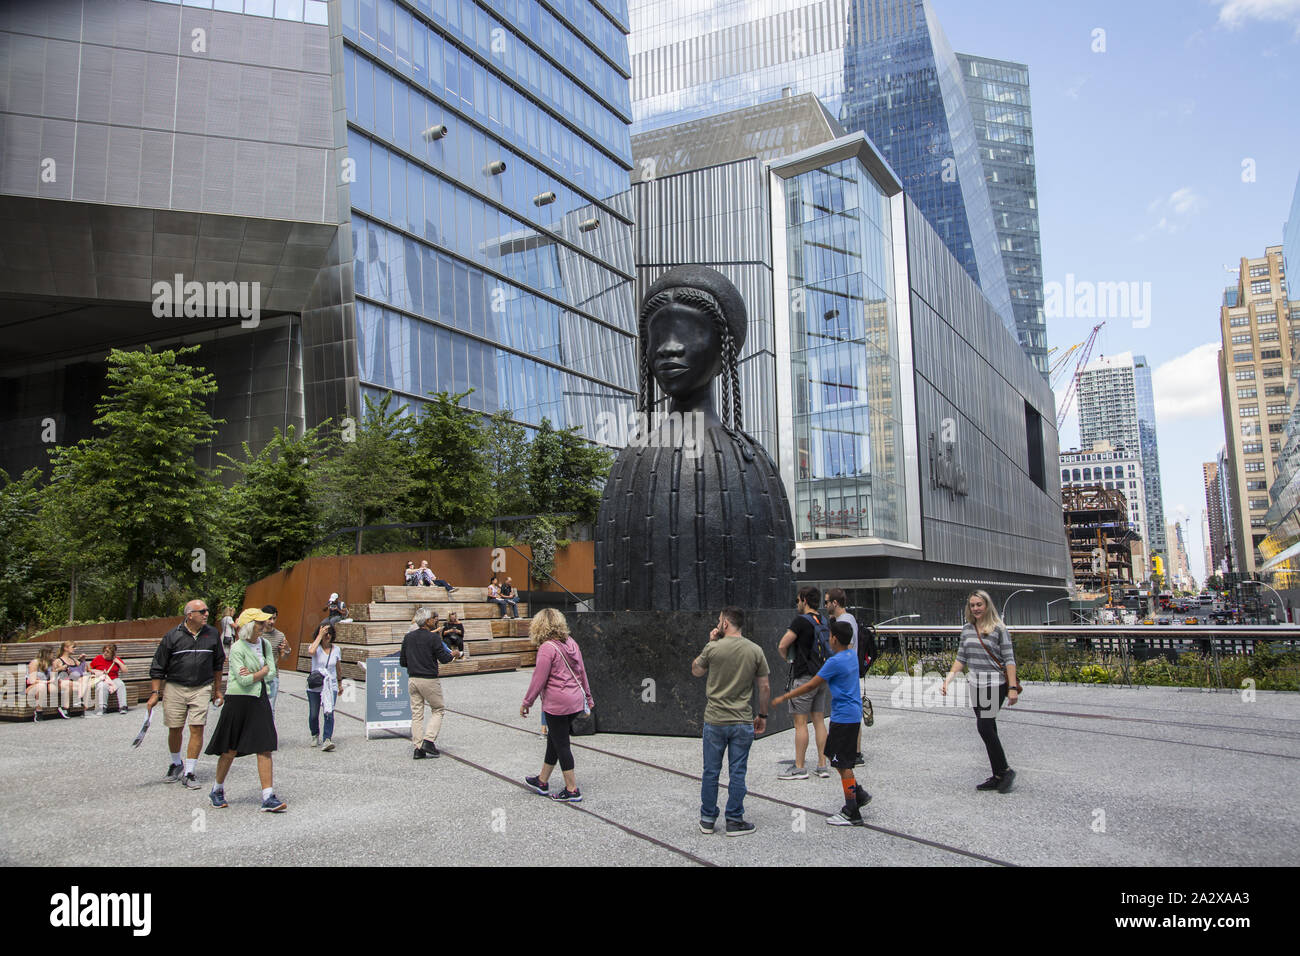 Der im Juni 2019 neu eröffnete Sockel ist der erste Raum der High Line – und einer der einzigen Orte in New York City –, der ausschließlich einer wechselnden Reihe neuer, monumentaler, zeitgenössischer Kunstaufträge gewidmet ist. Der Sockel befindet sich auf der Spur, dem neuesten Abschnitt der High Line an der 30th Street und 10th Avenue, wo ein großer offener Raum einen atemberaubenden Blick auf die Stadt bietet. Skulptur von Simone Leigh. simone leigh Backsteinhaus Stockfoto